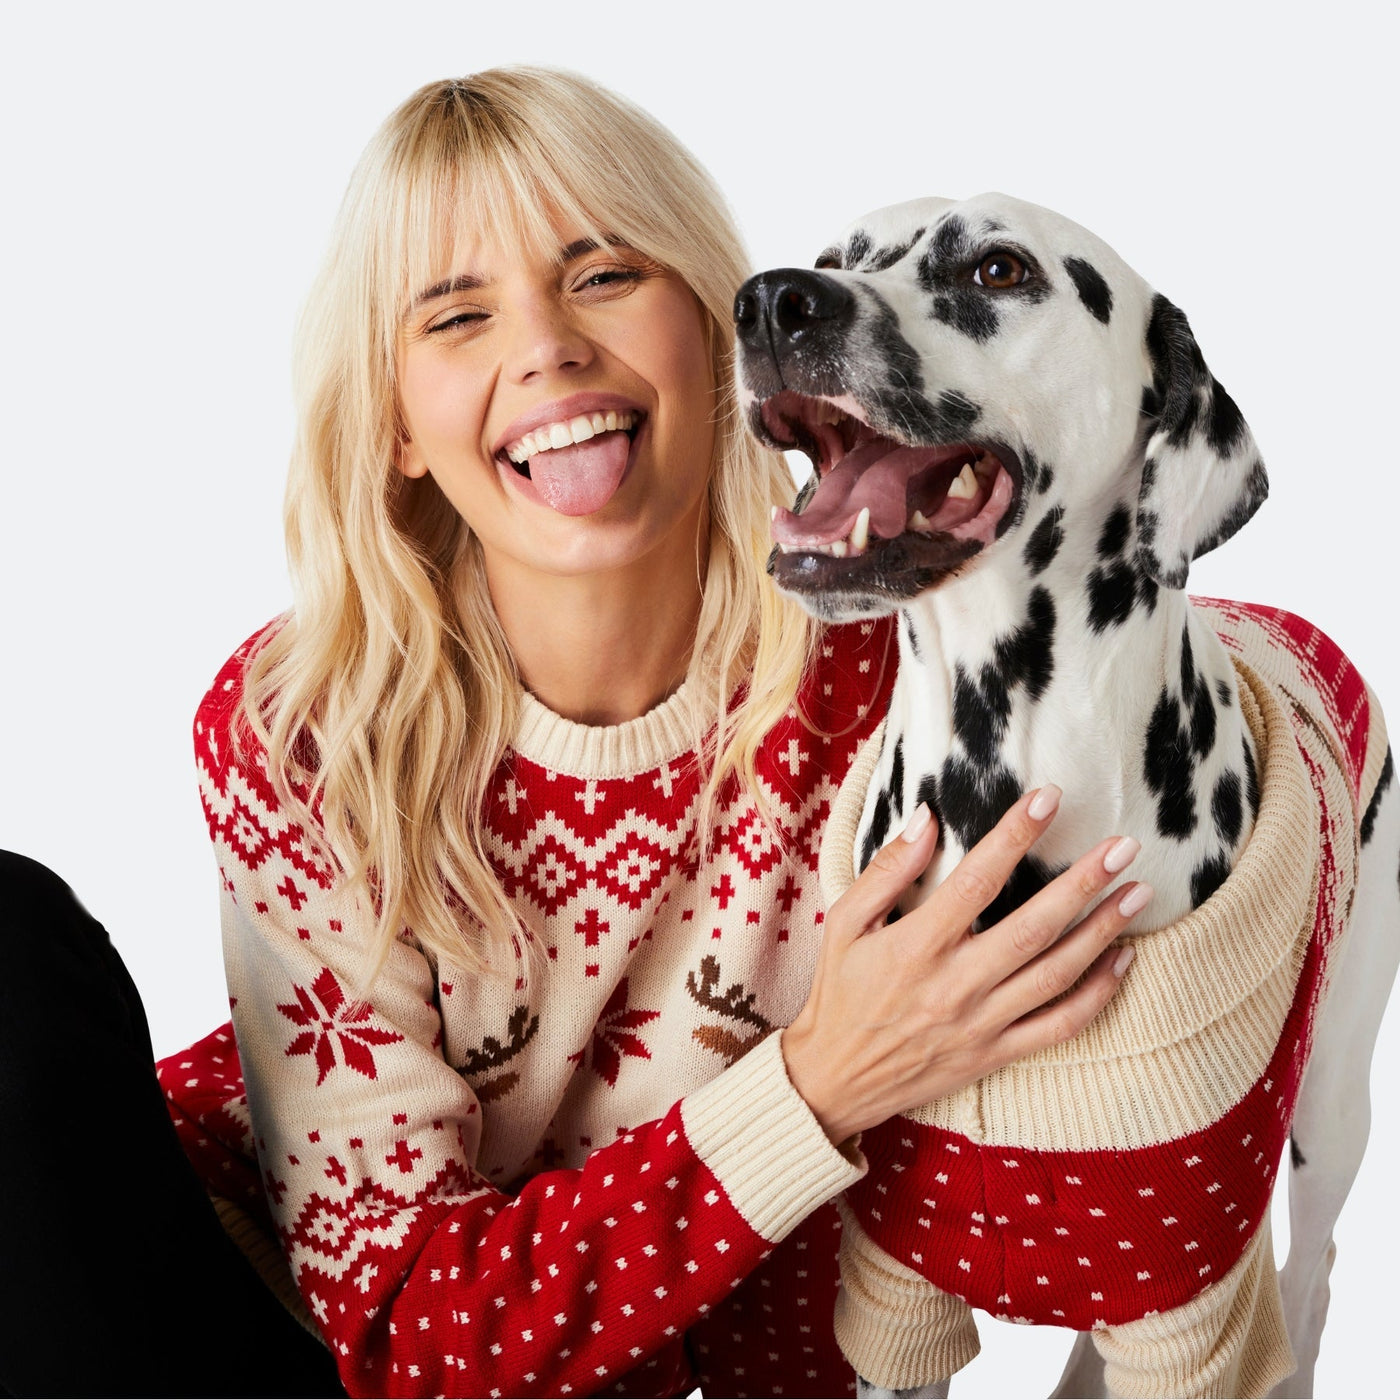 Retro Rentier Weihnachtspullover für Hunde